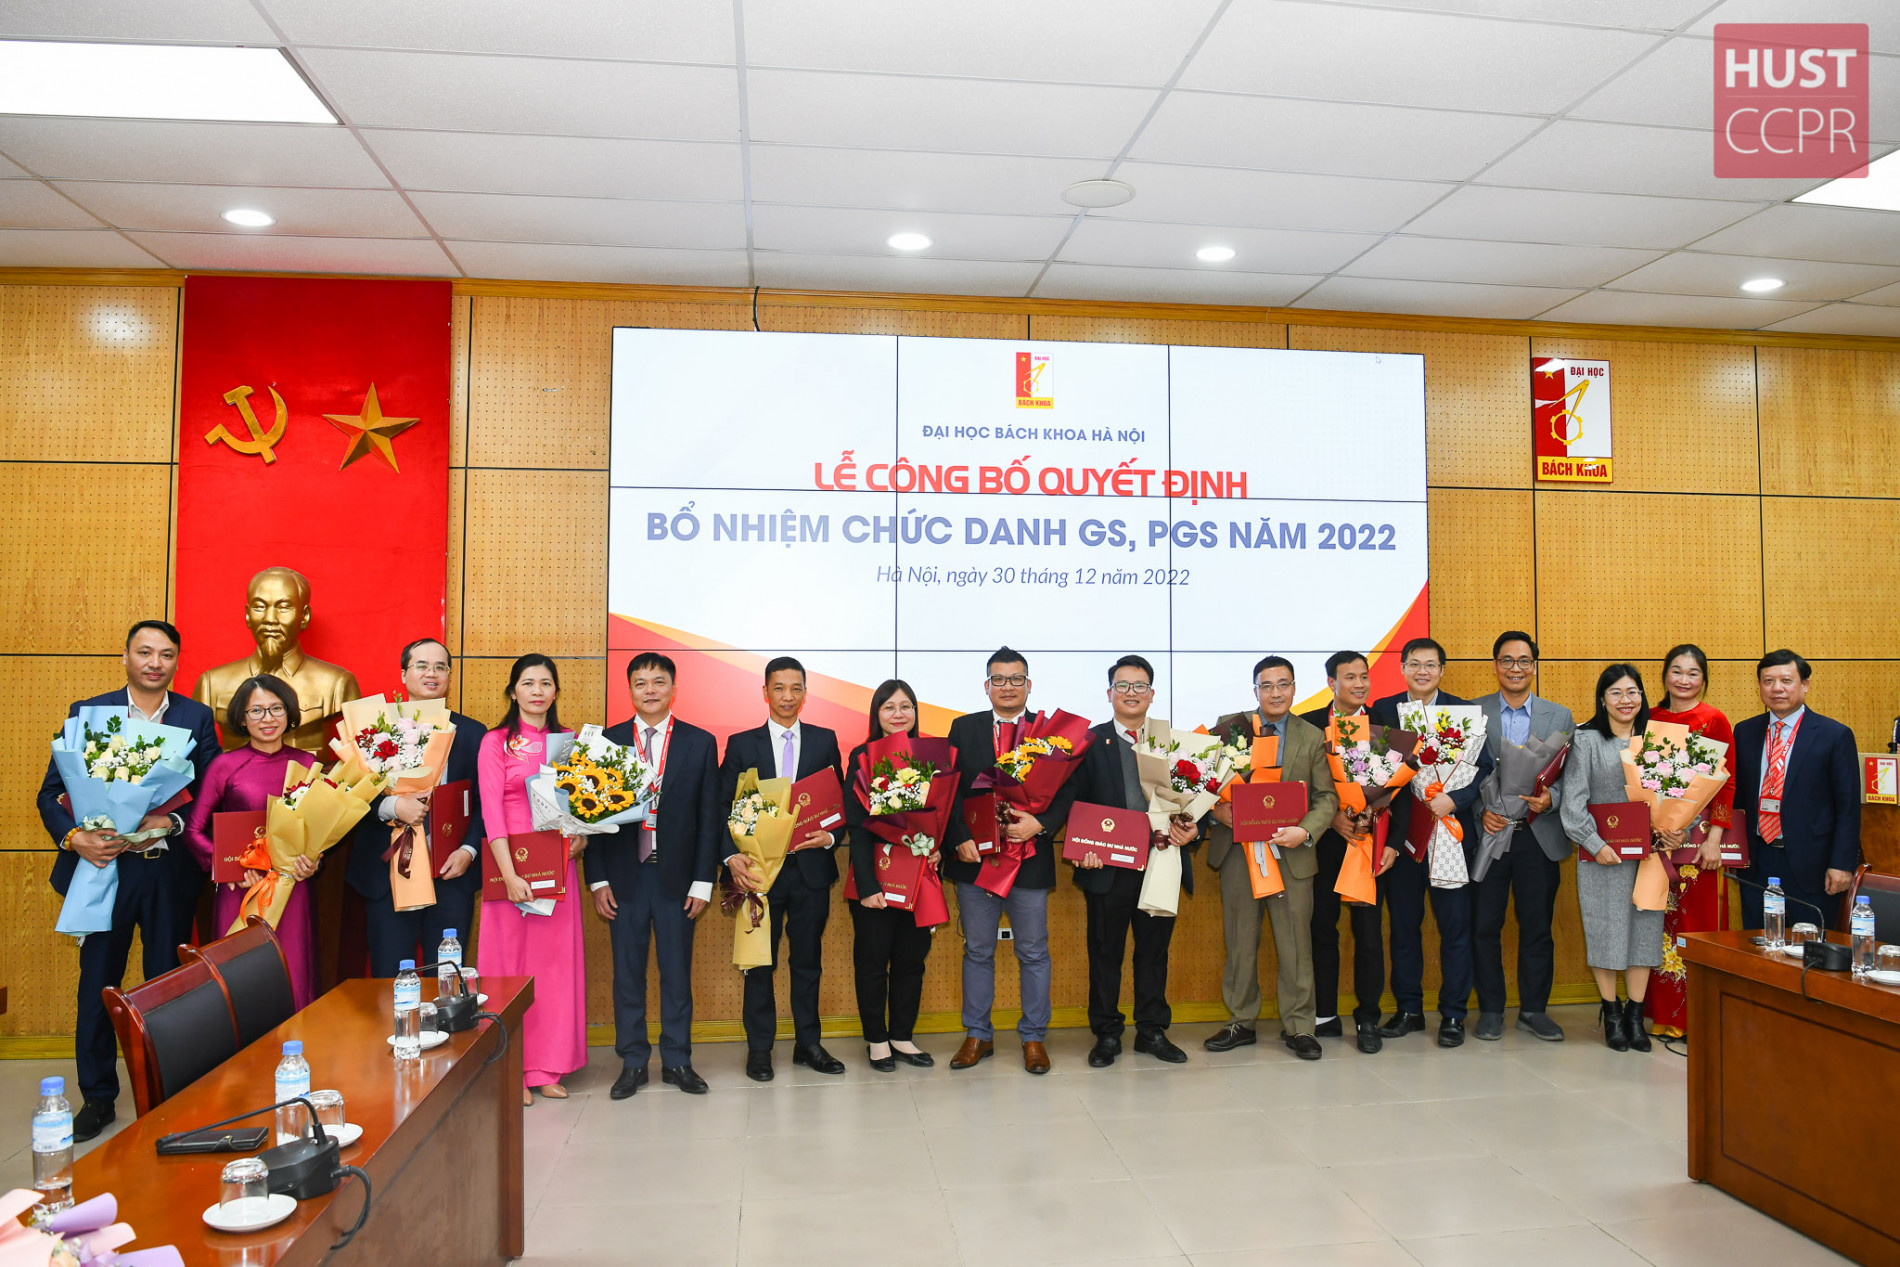 Các tân giáo sư, phó giáo sư năm 2022 của Đại học Bách khoa Hà Nội chụp ảnh cùng lãnh đạo nhà trường